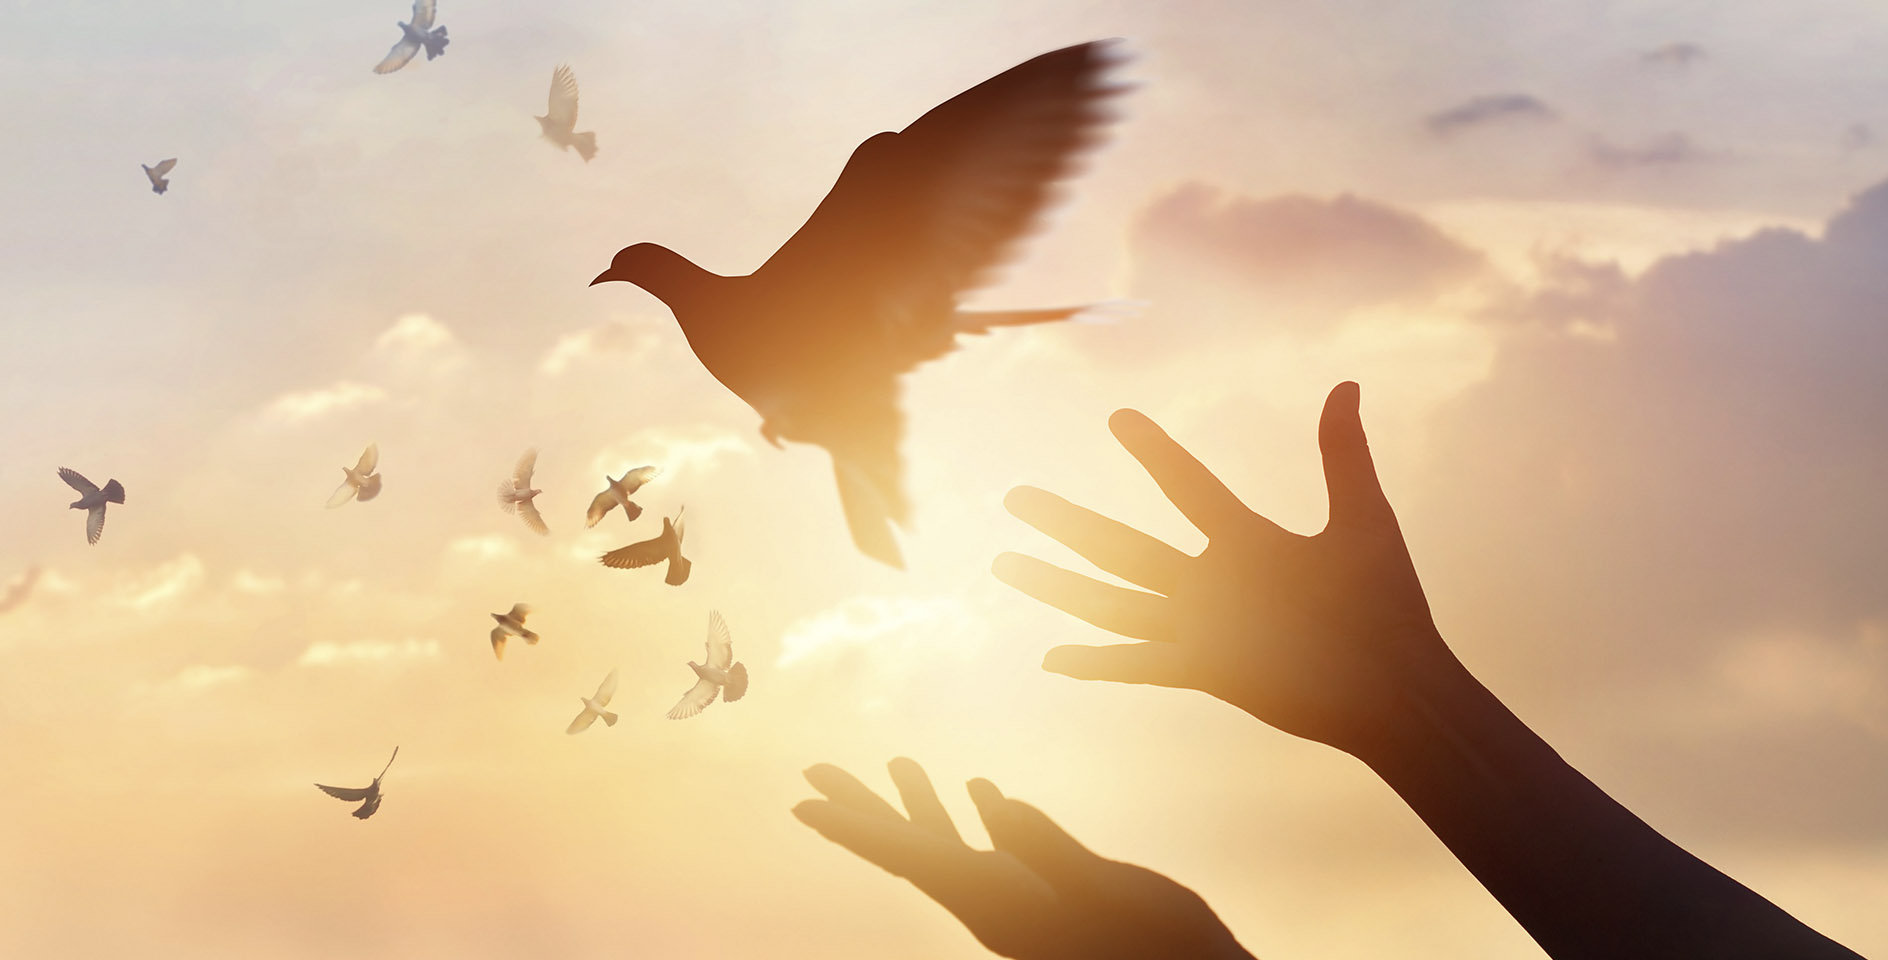 День человека птицы. Свободная птица. Птица улетает с руки. Отпустить птицу в небо. Свобода счастье.